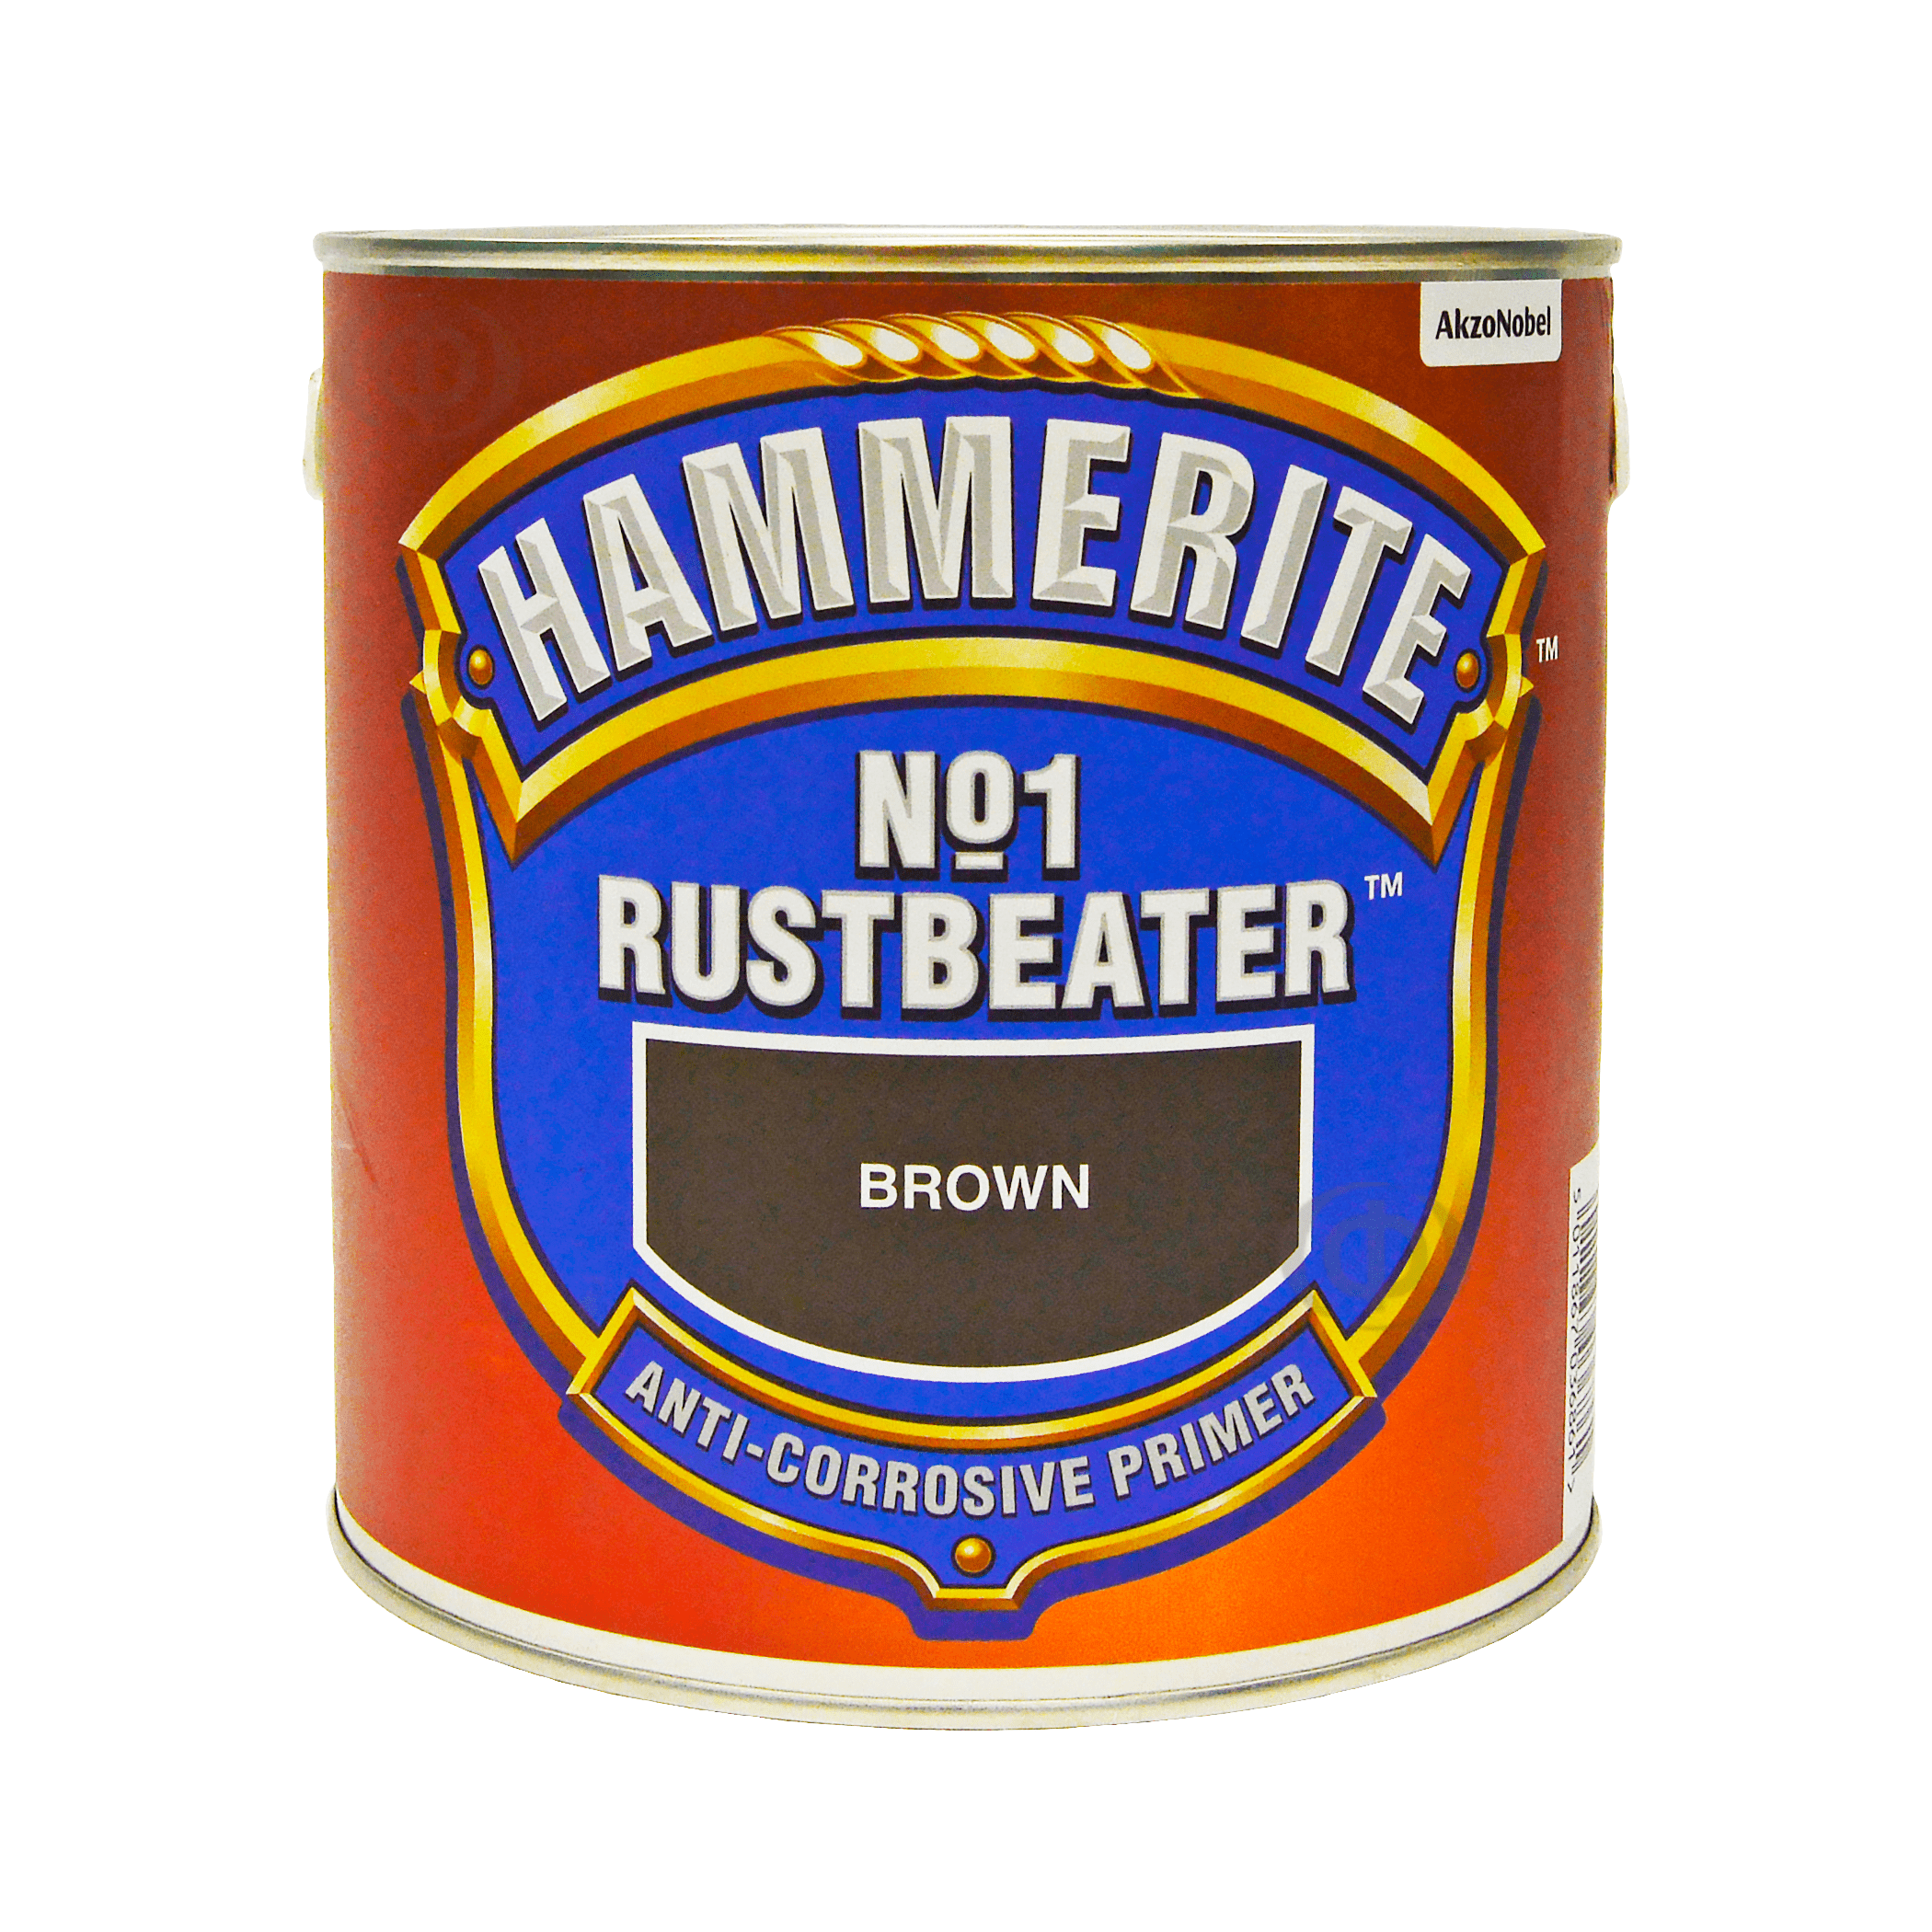 Hammerite rust beater no1 антикоррозийный грунт для черных металлов фото 4